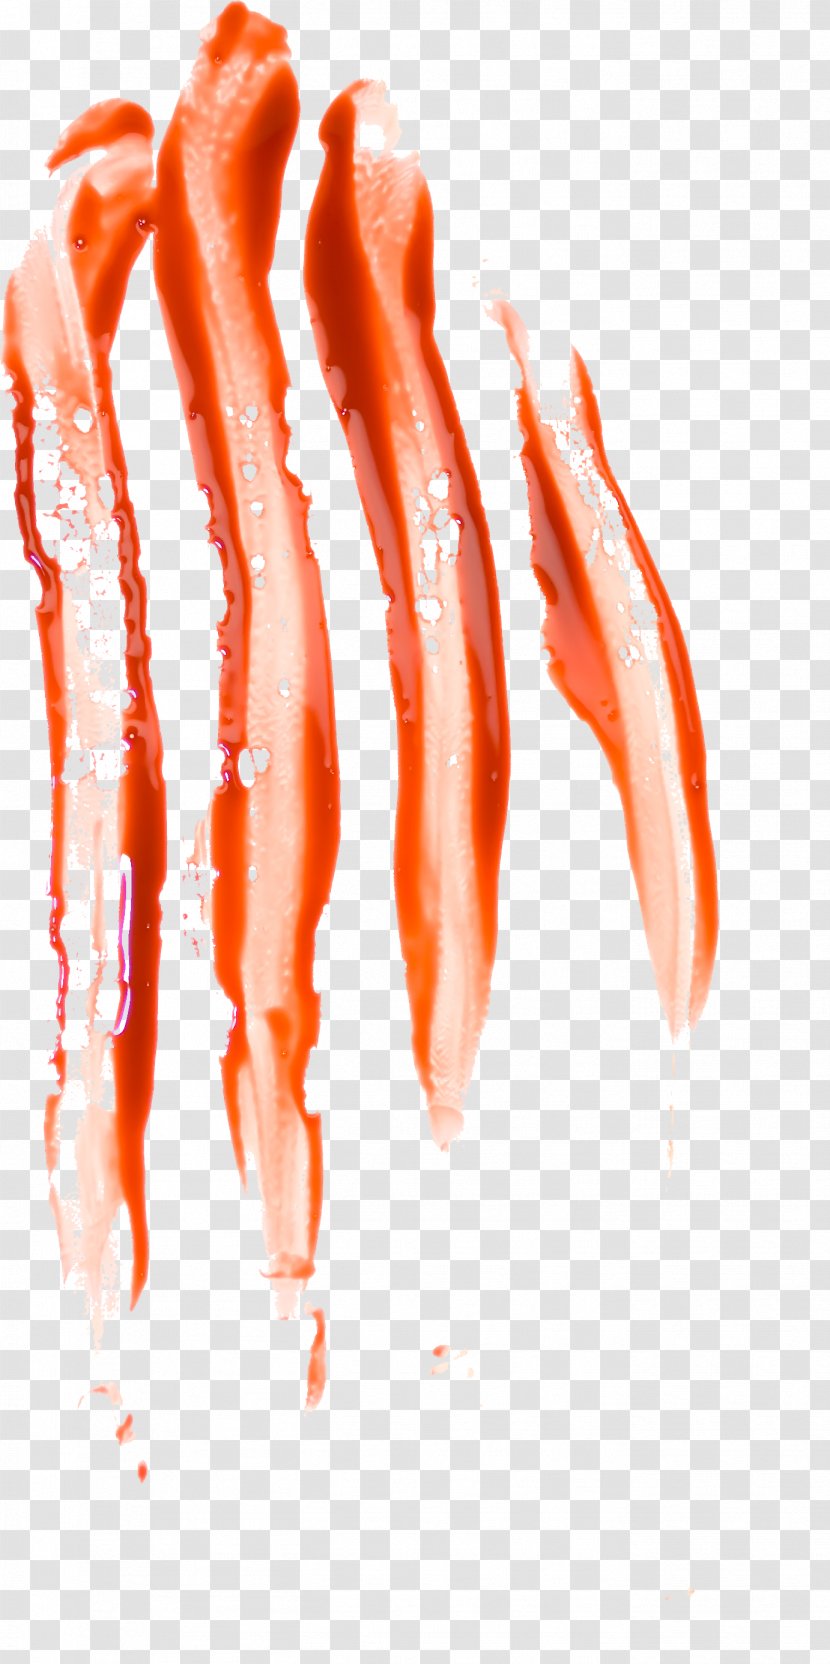 Blood Clip Art - Image File Formats Transparent PNG